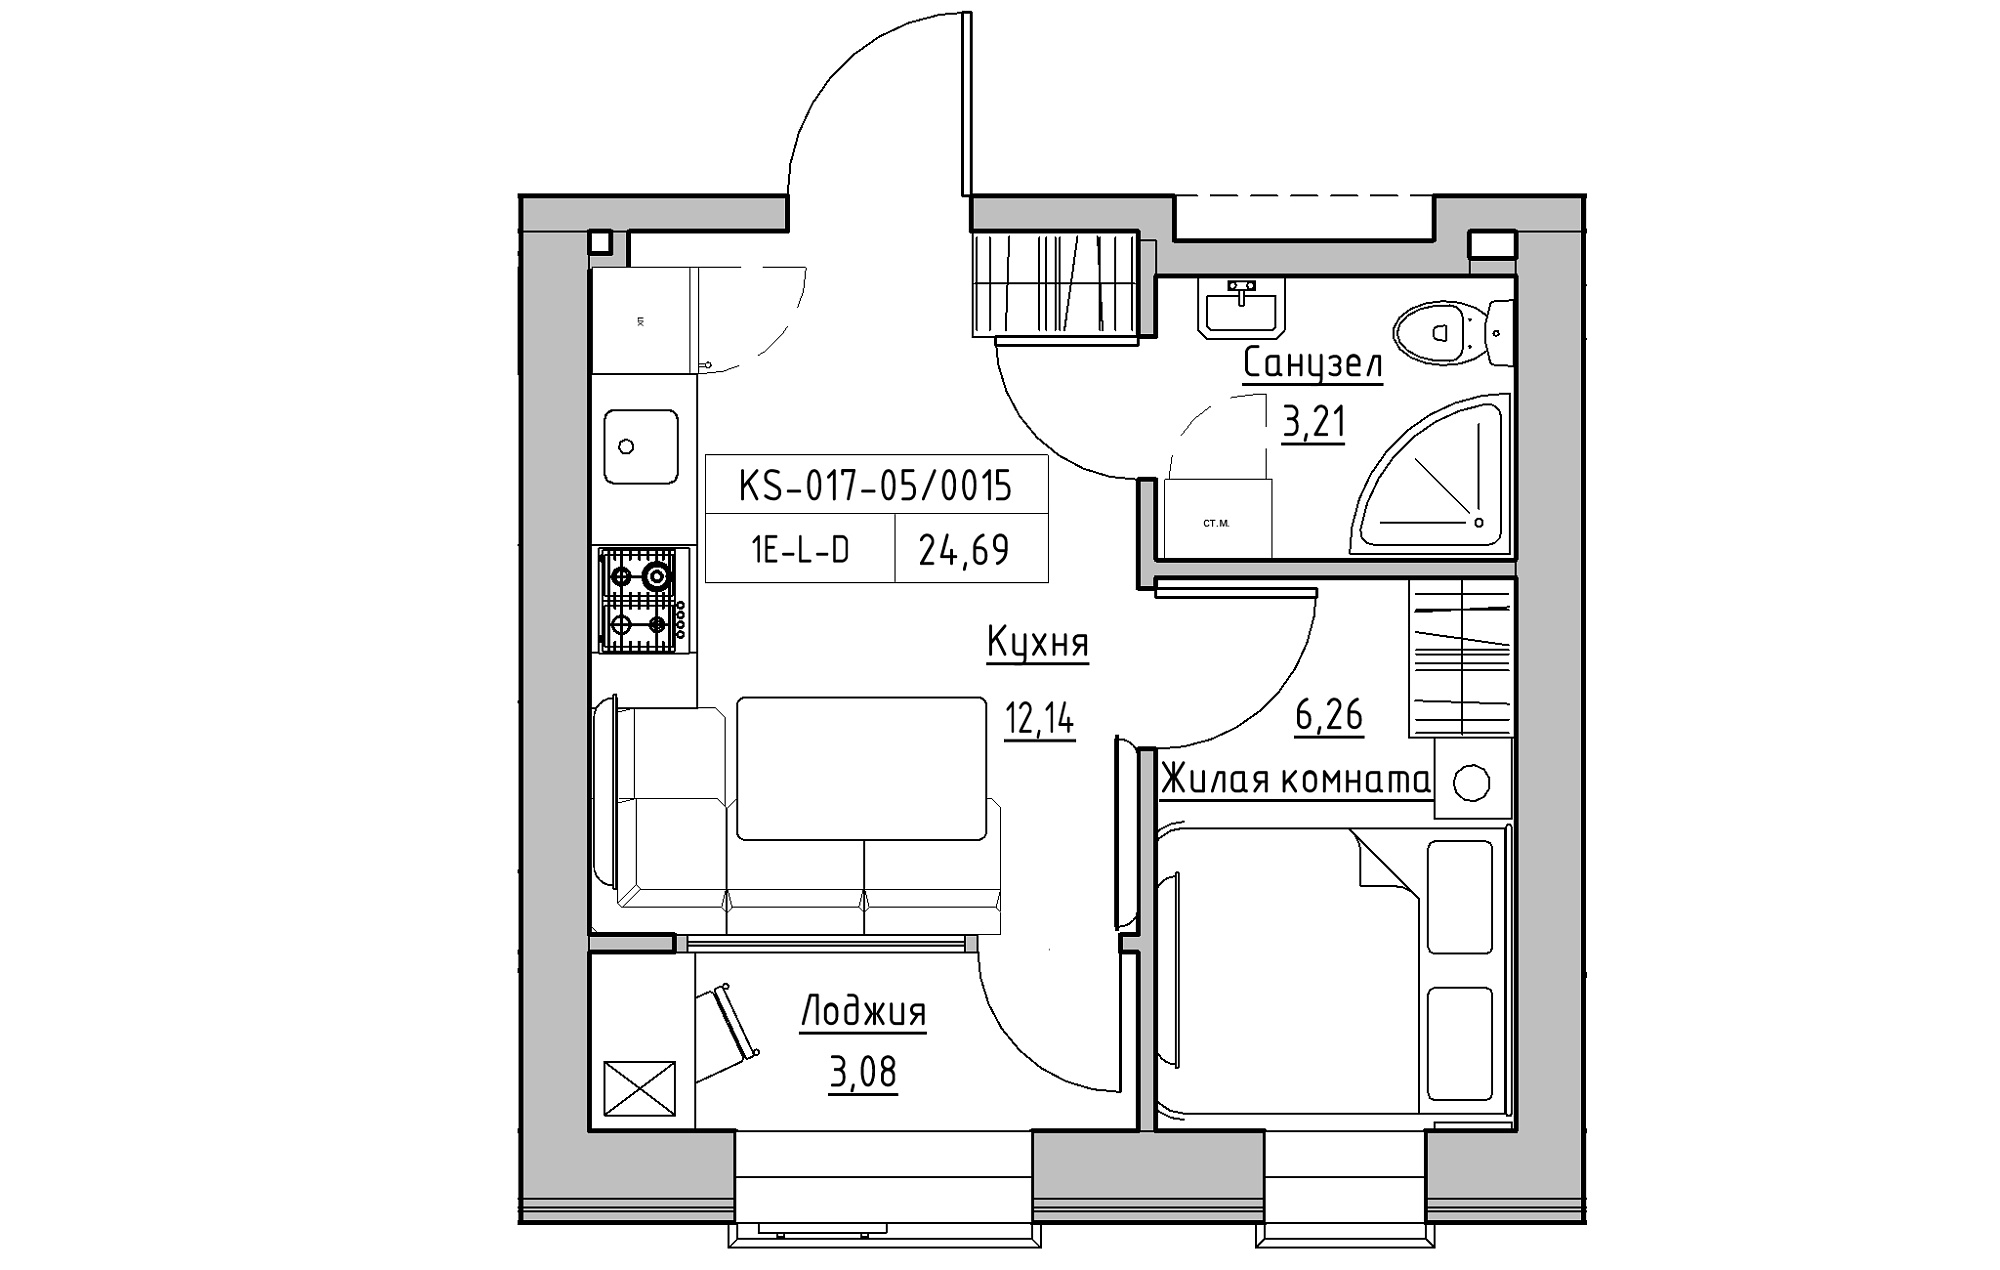 Планировка 1-к квартира площей 24.69м2, KS-017-05/0015.